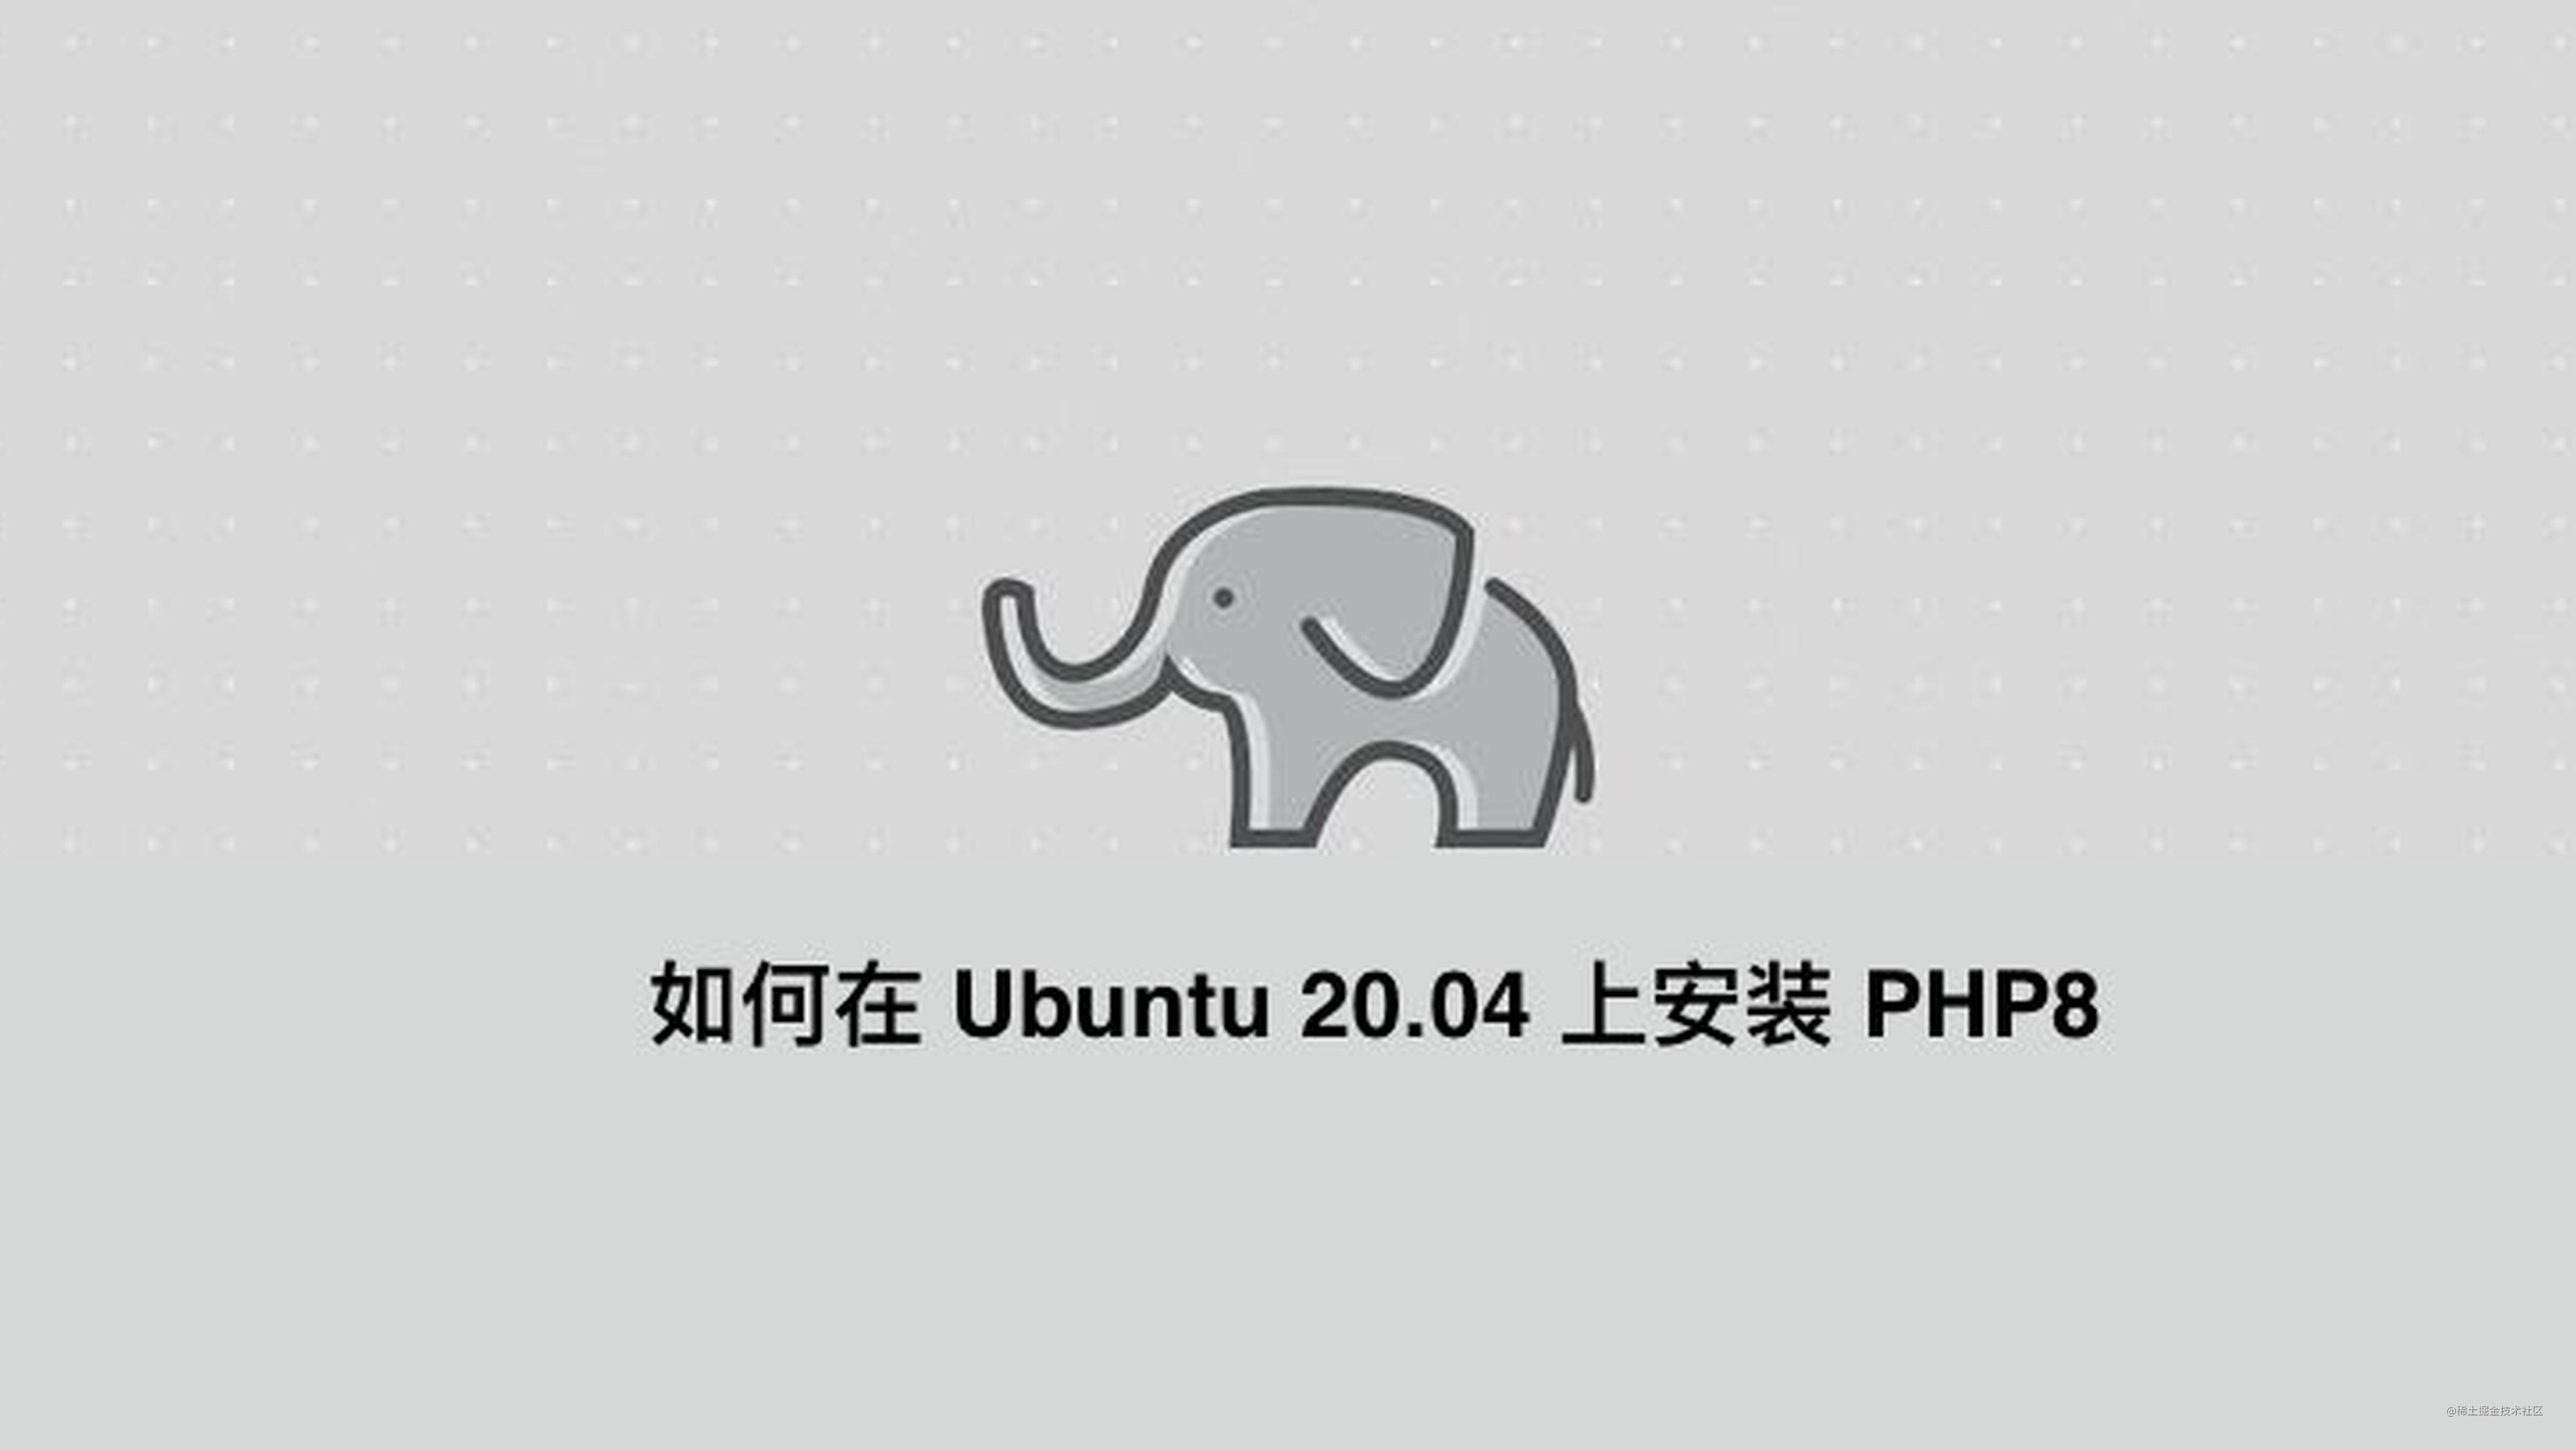 如何在 Ubuntu 20.04 上安装 PHP8.0